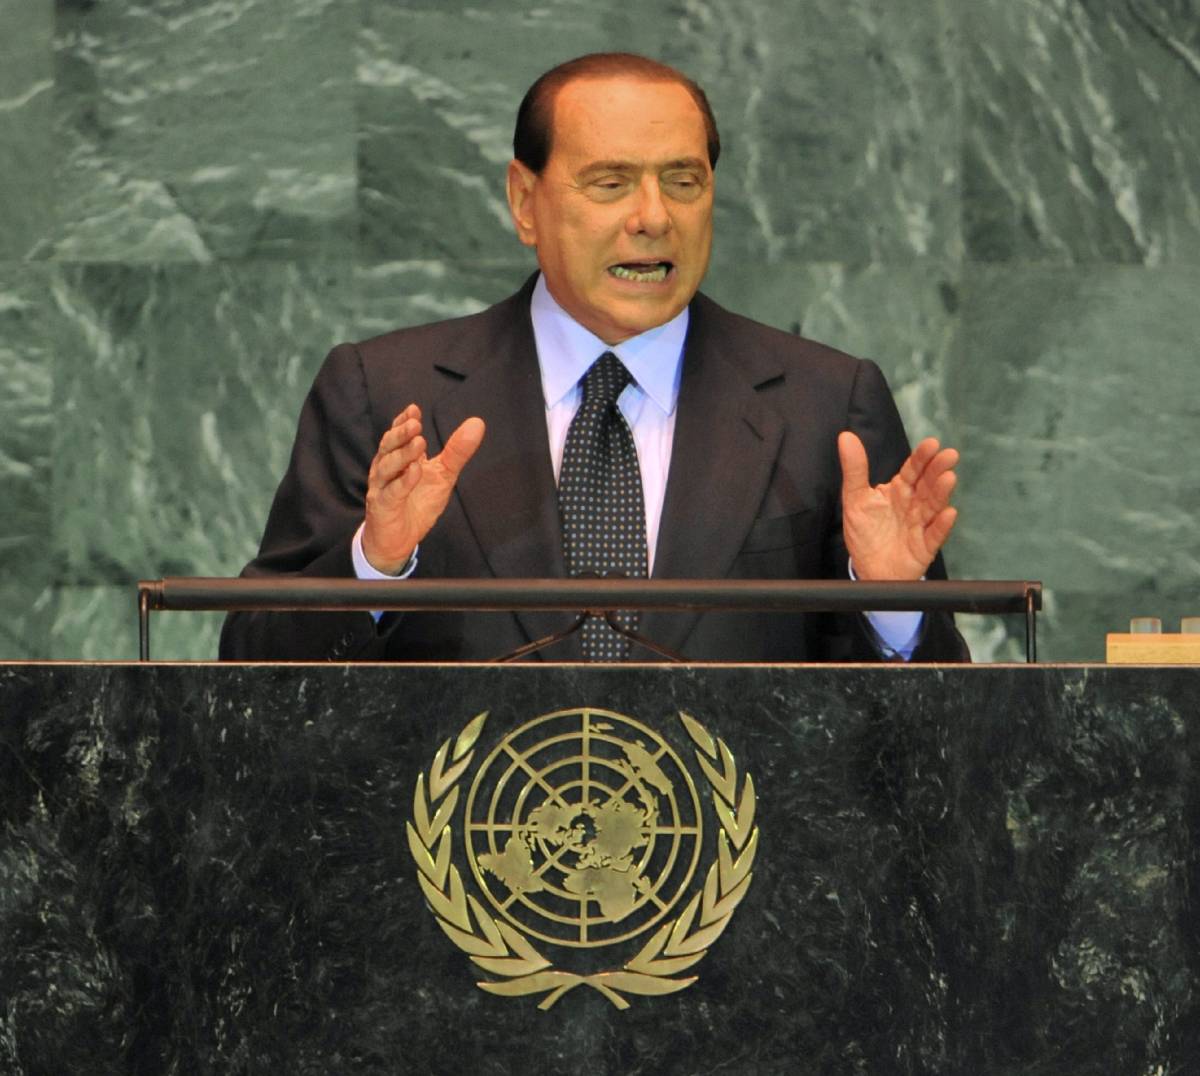 L'intervento del premier Berlusconi all'Assemblea generale dell'Onu